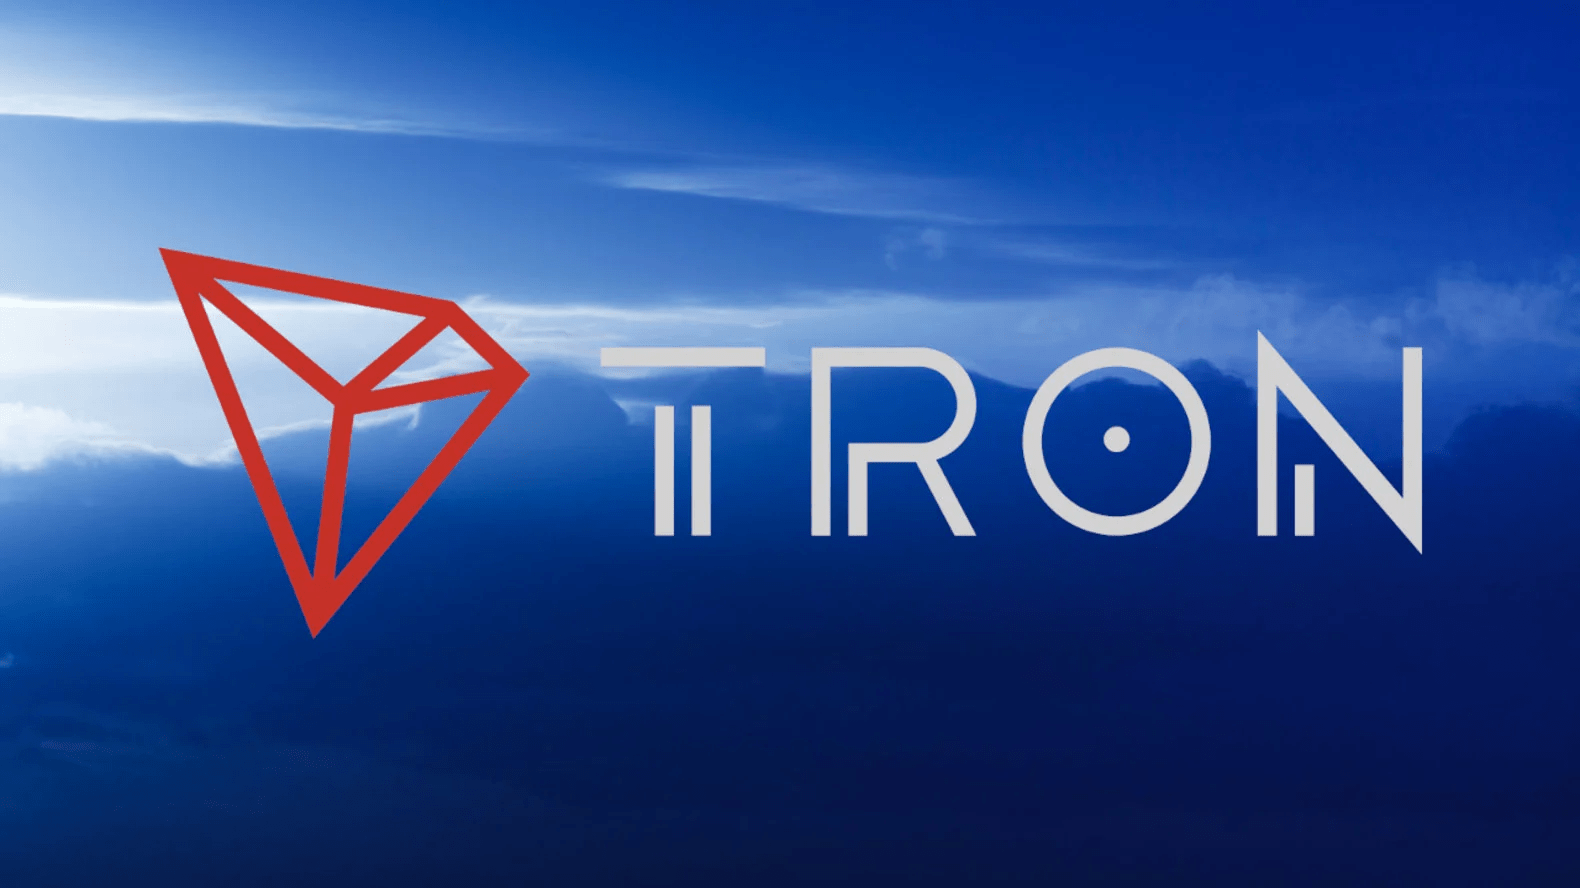 TRON follows LUNA’s example – despite the Terra stablecoin disaster